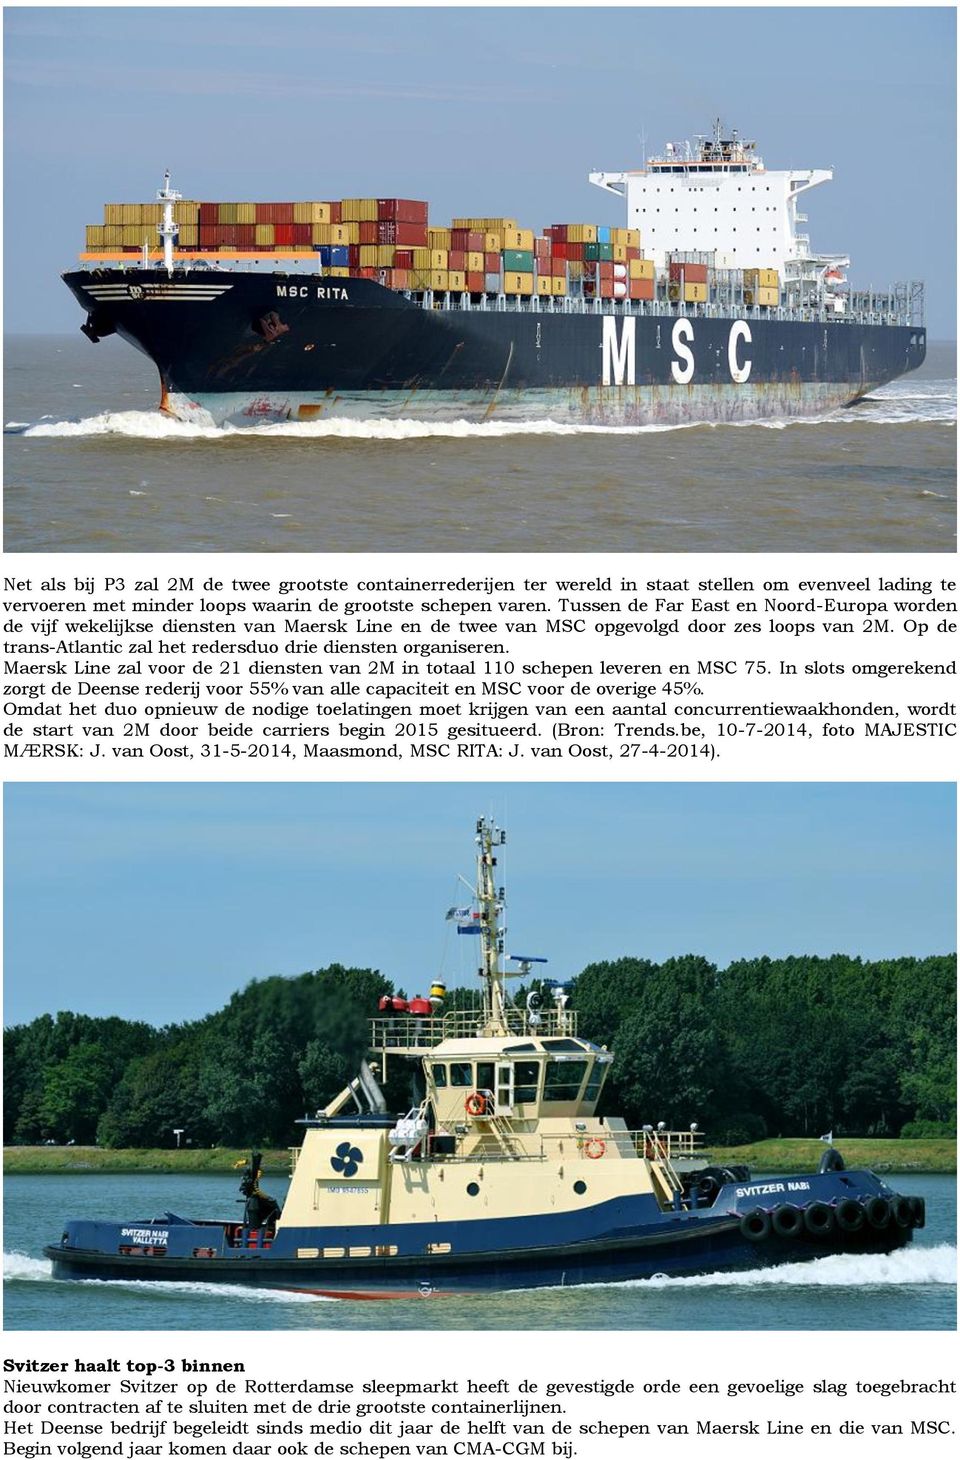 Op de trans-atlantic zal het redersduo drie diensten organiseren. Maersk Line zal voor de 21 diensten van 2M in totaal 110 schepen leveren en MSC 75.